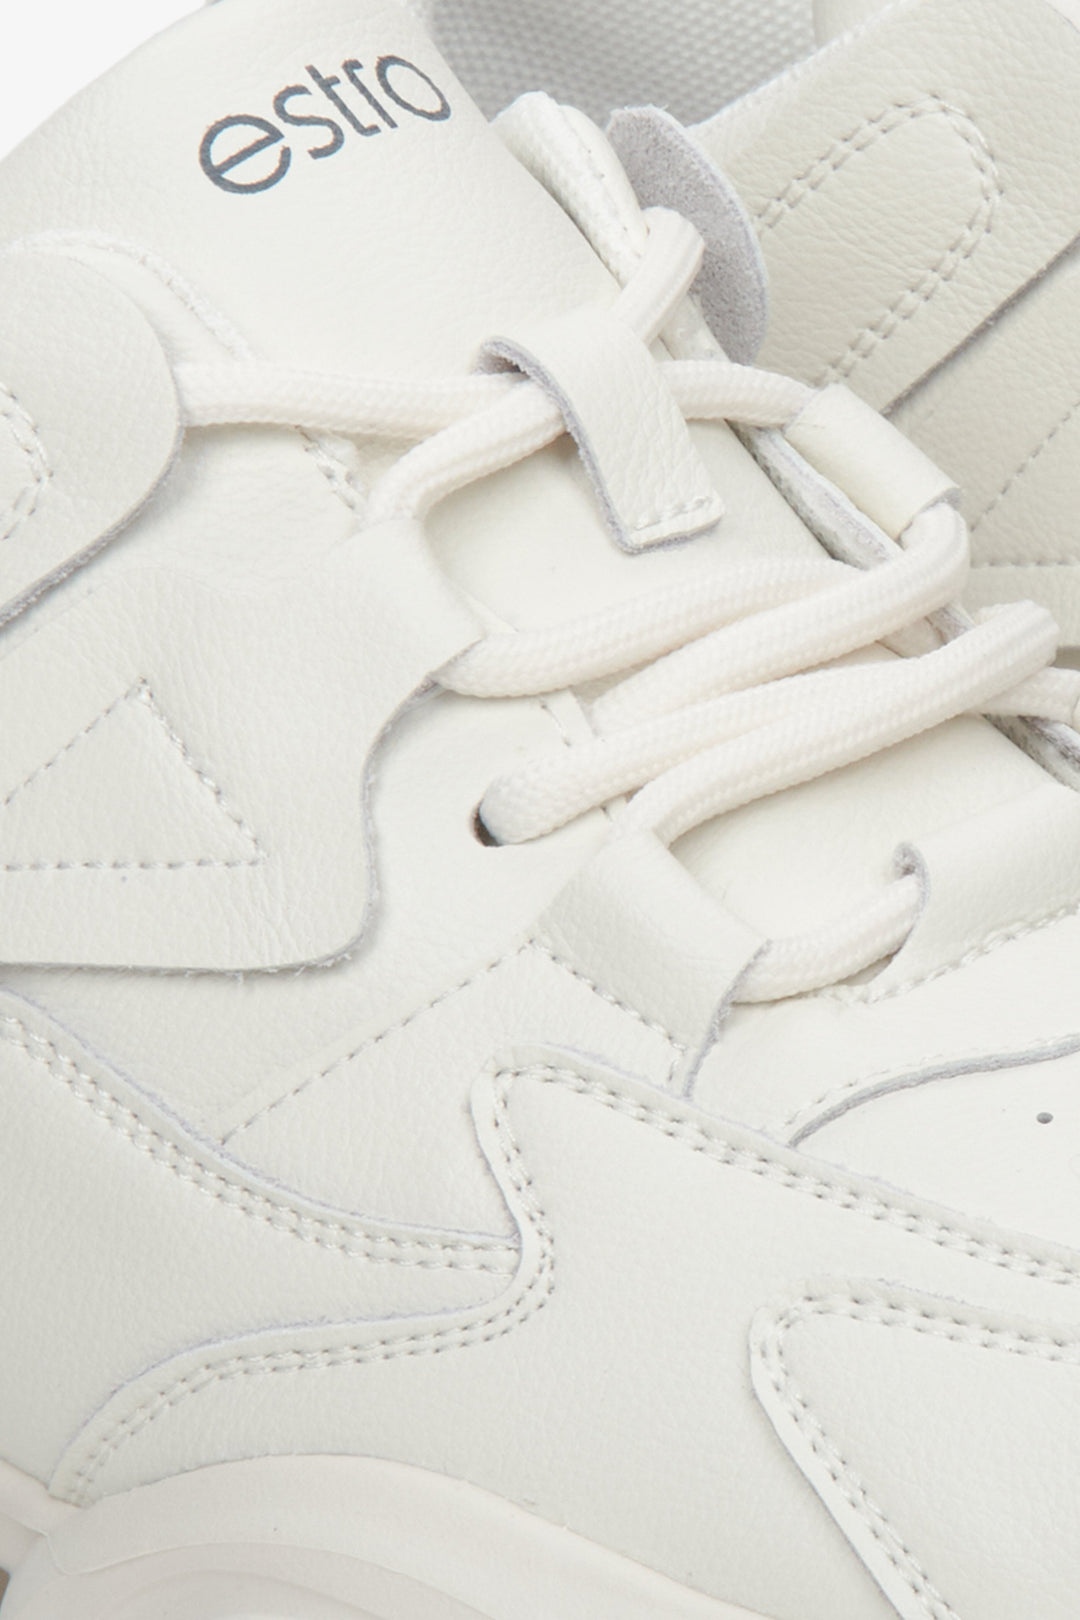 Białe sneakersy damskie Estro ze skóry naturalnej - zbliżenie na detale obuwia.